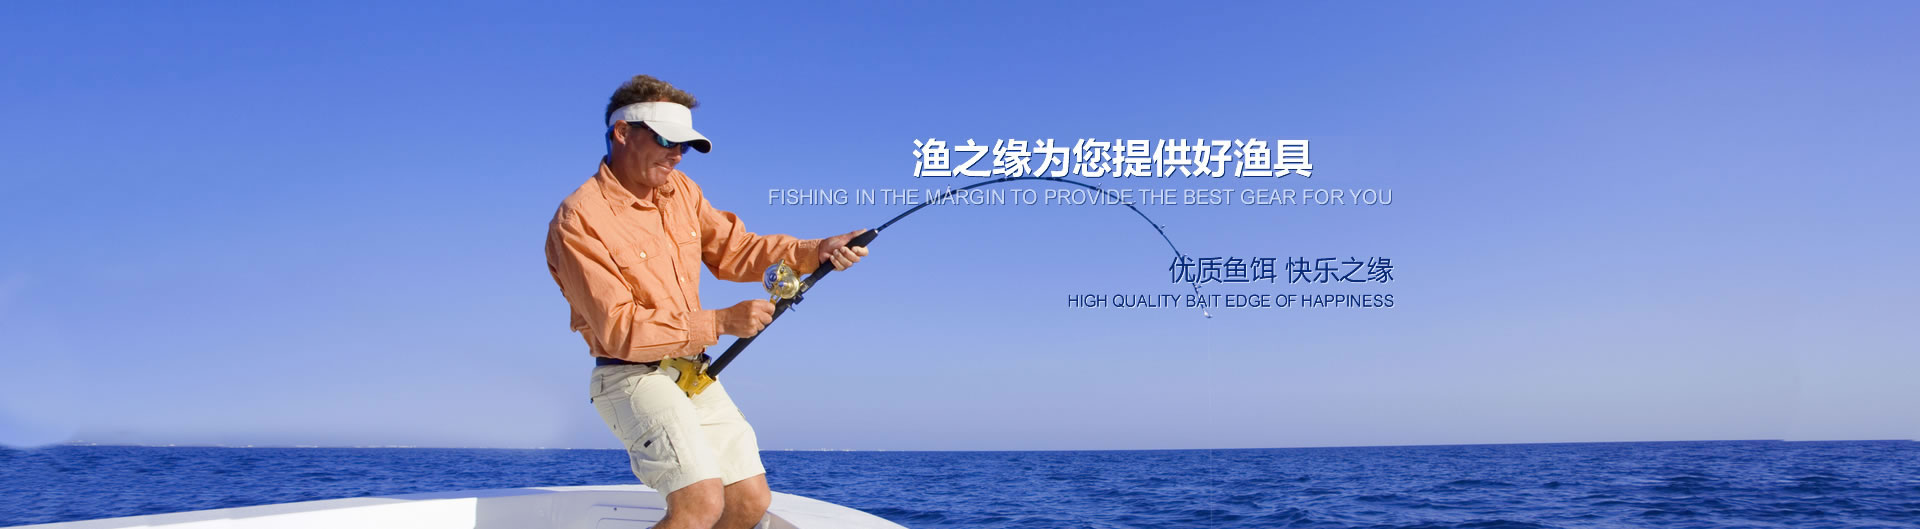 河南省渔之缘渔具用品有限公司-饵料,浮漂,钓线,渔具;